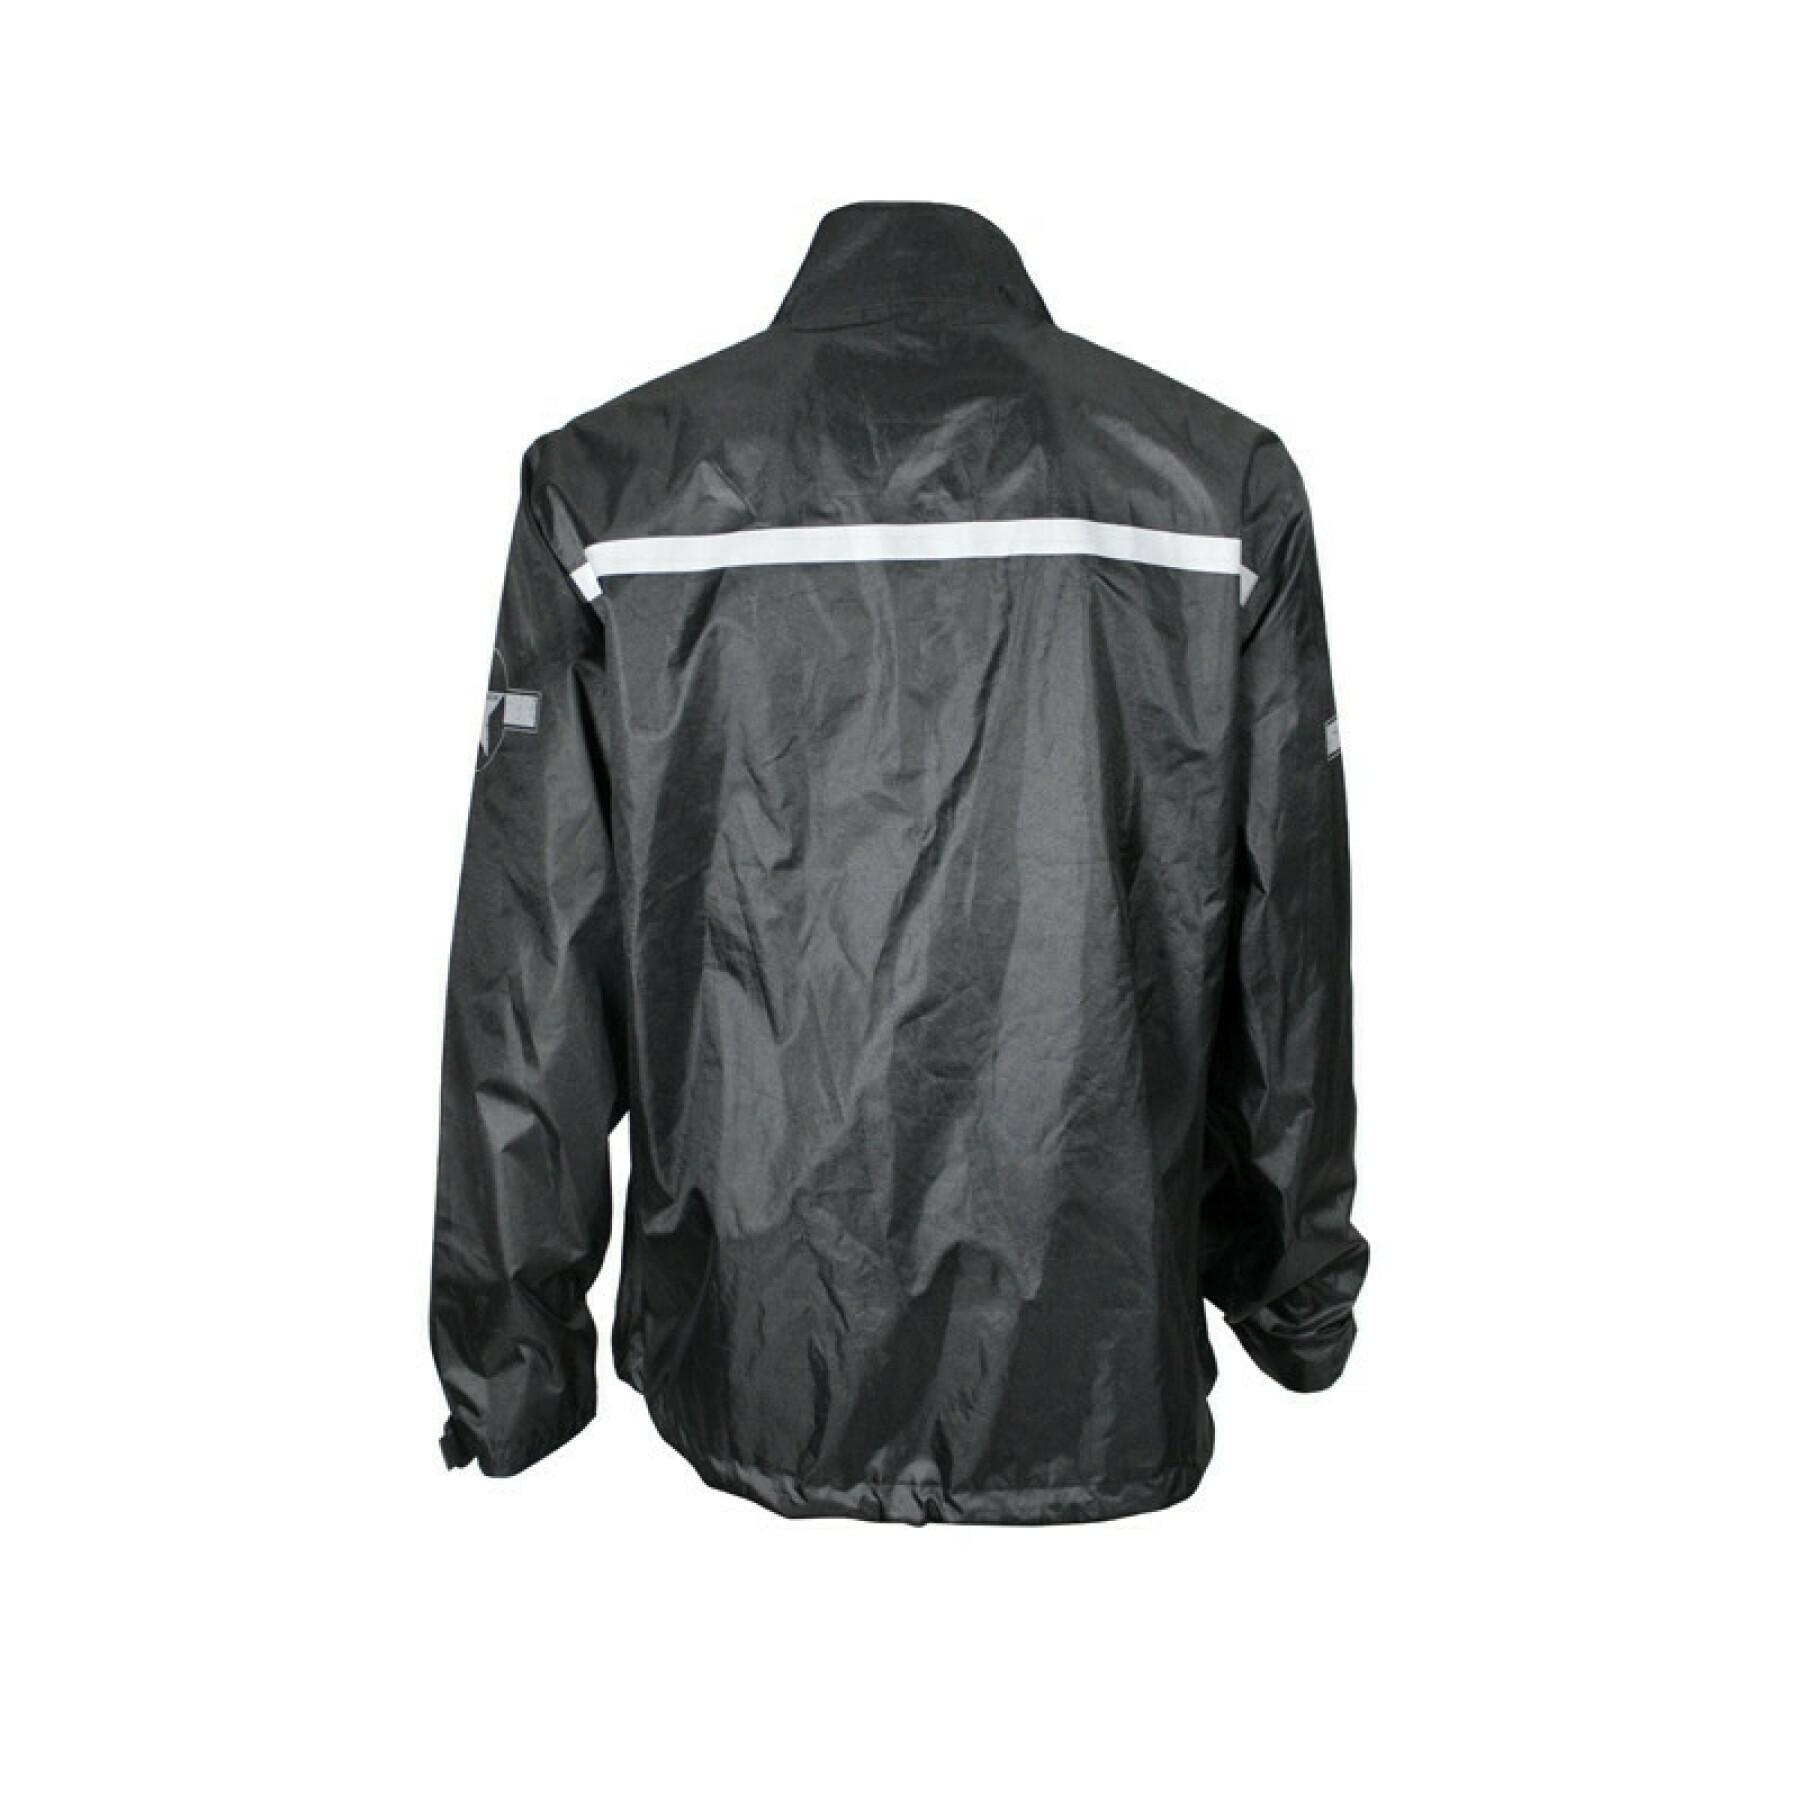 Motorcycle rain jacket Harisson superlight